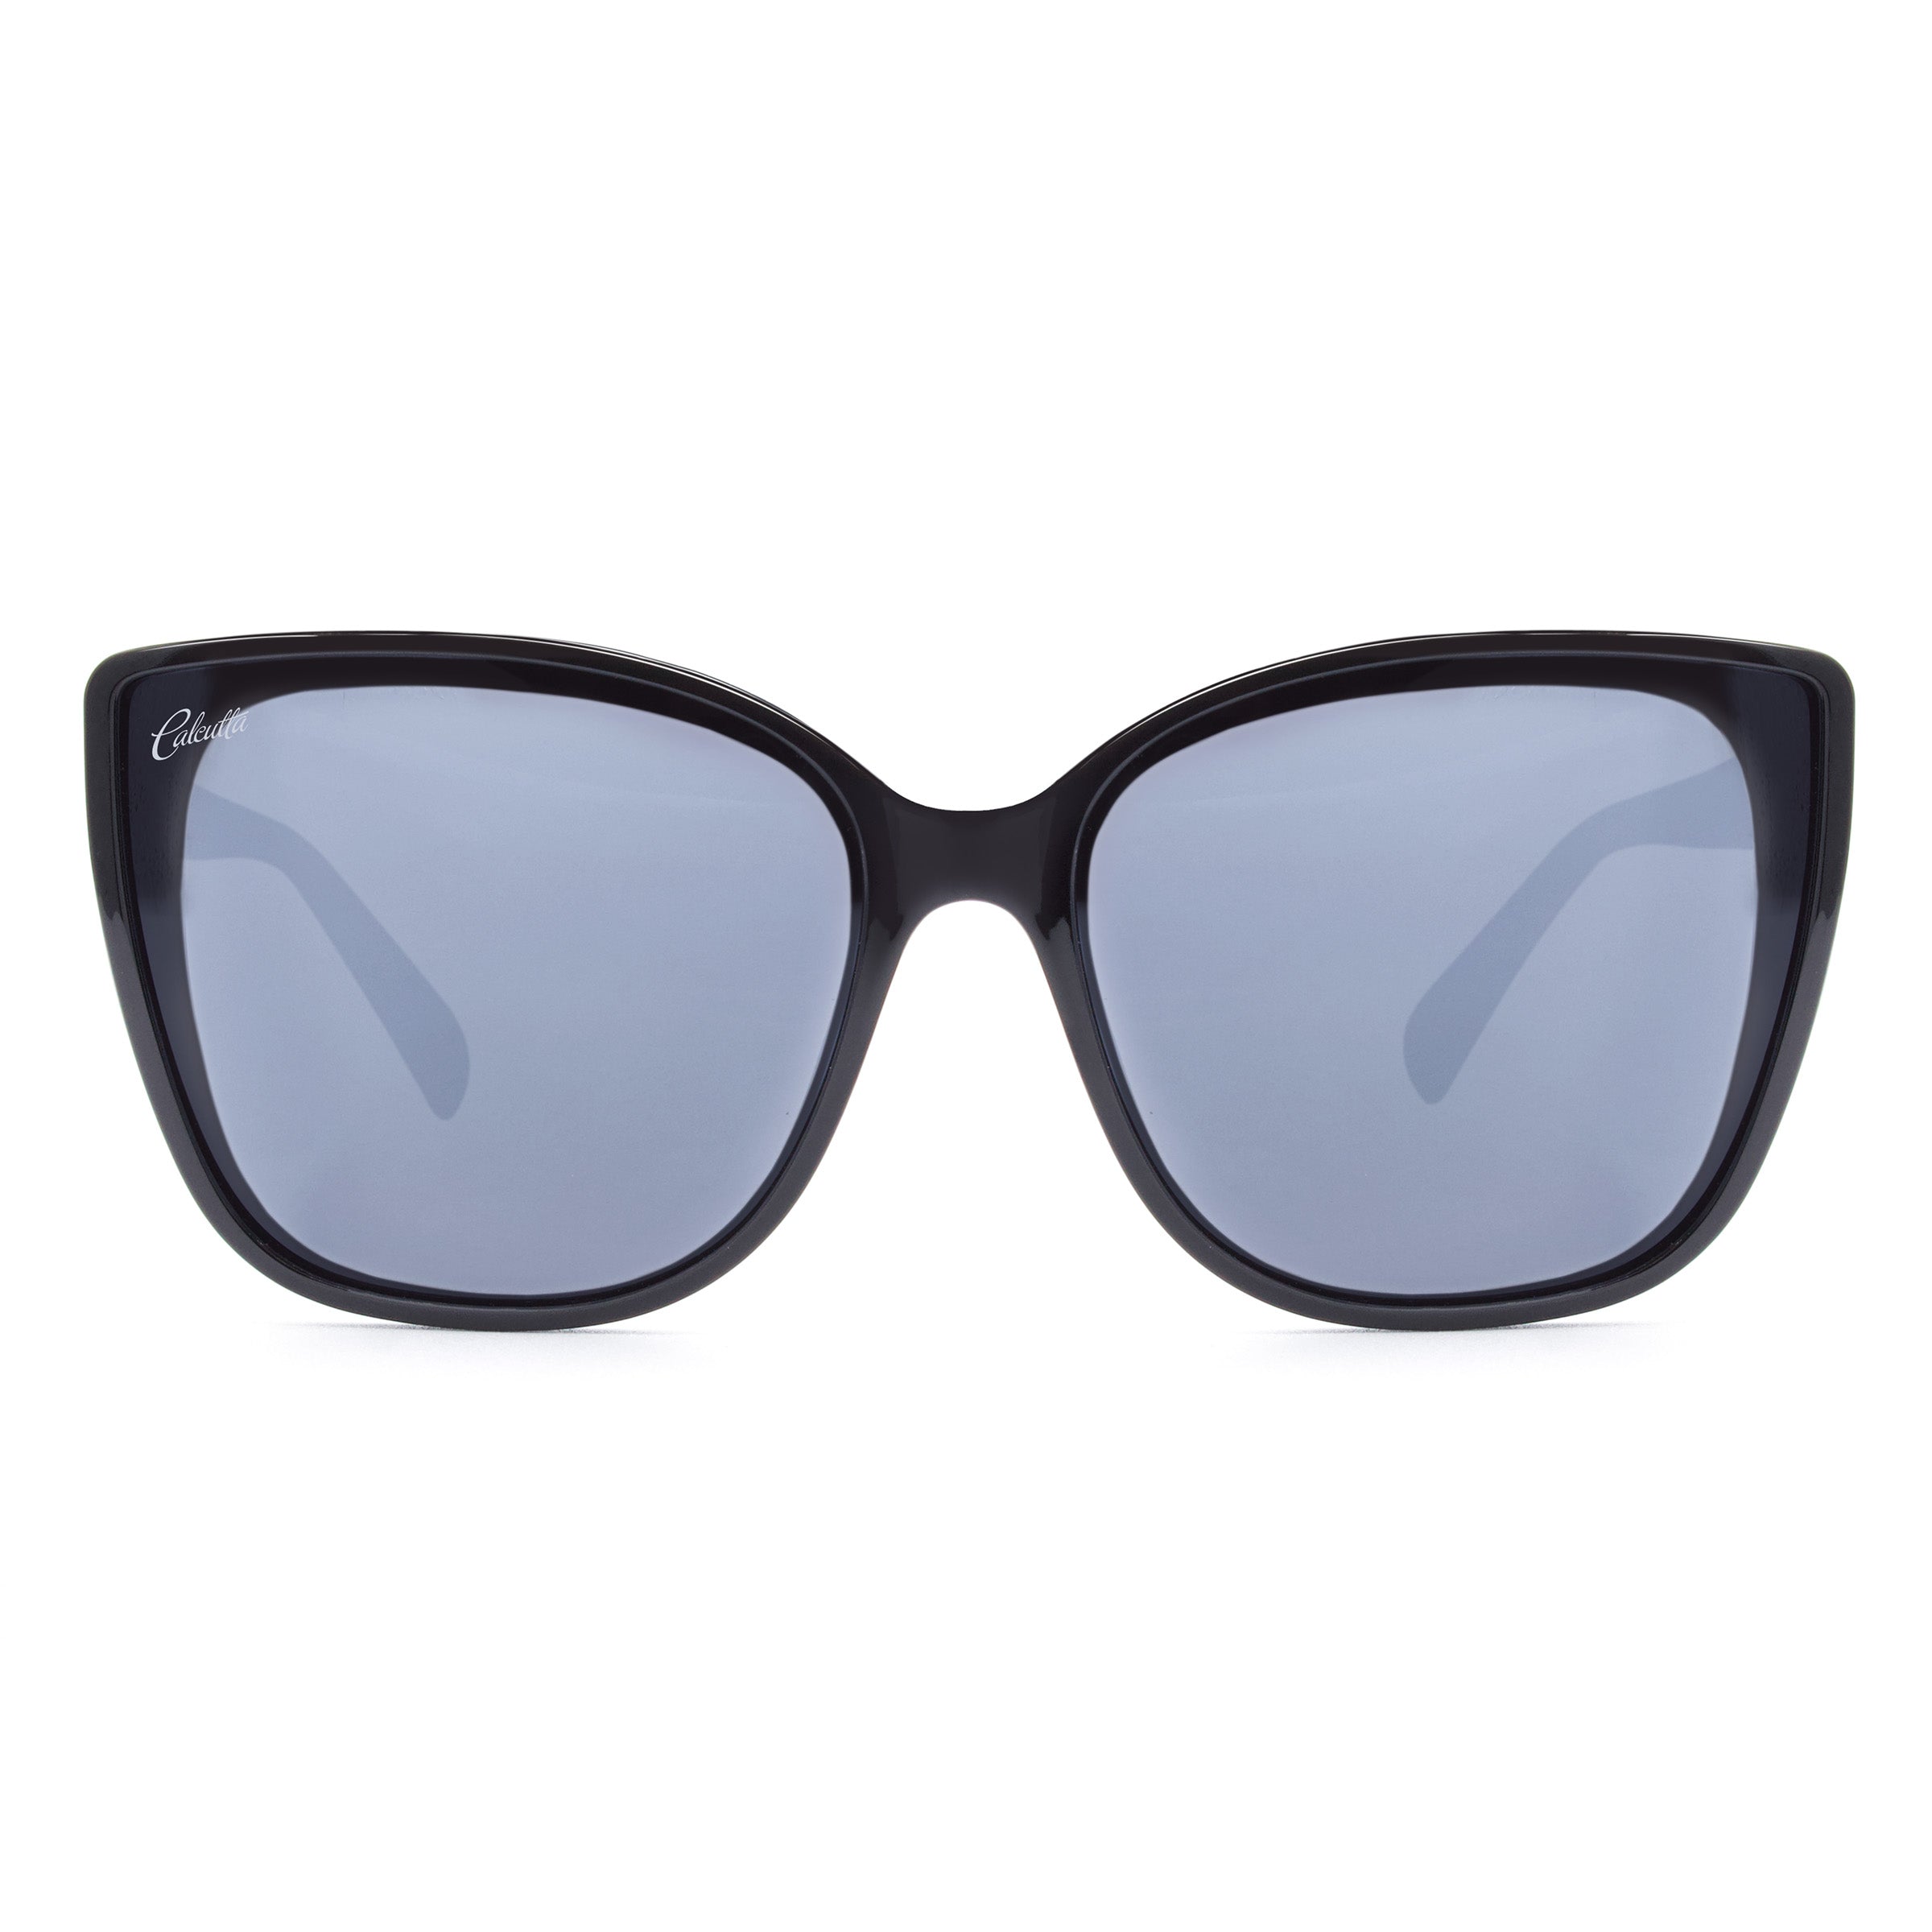 Calcutta Starfish sunglasses silver mirror front